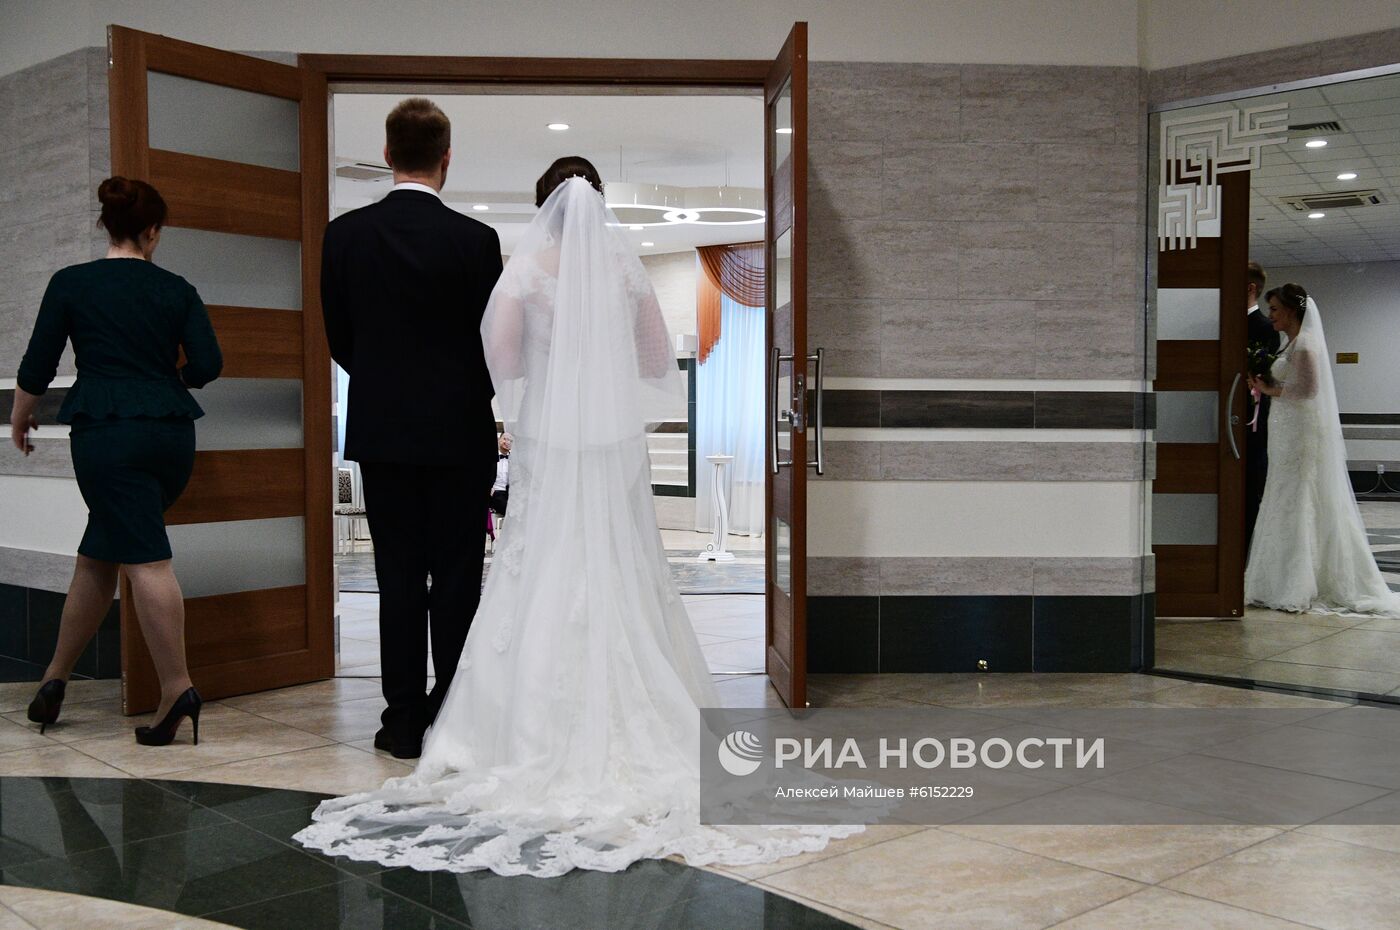 Свадебный бум в "красивую" дату 02.02.2020